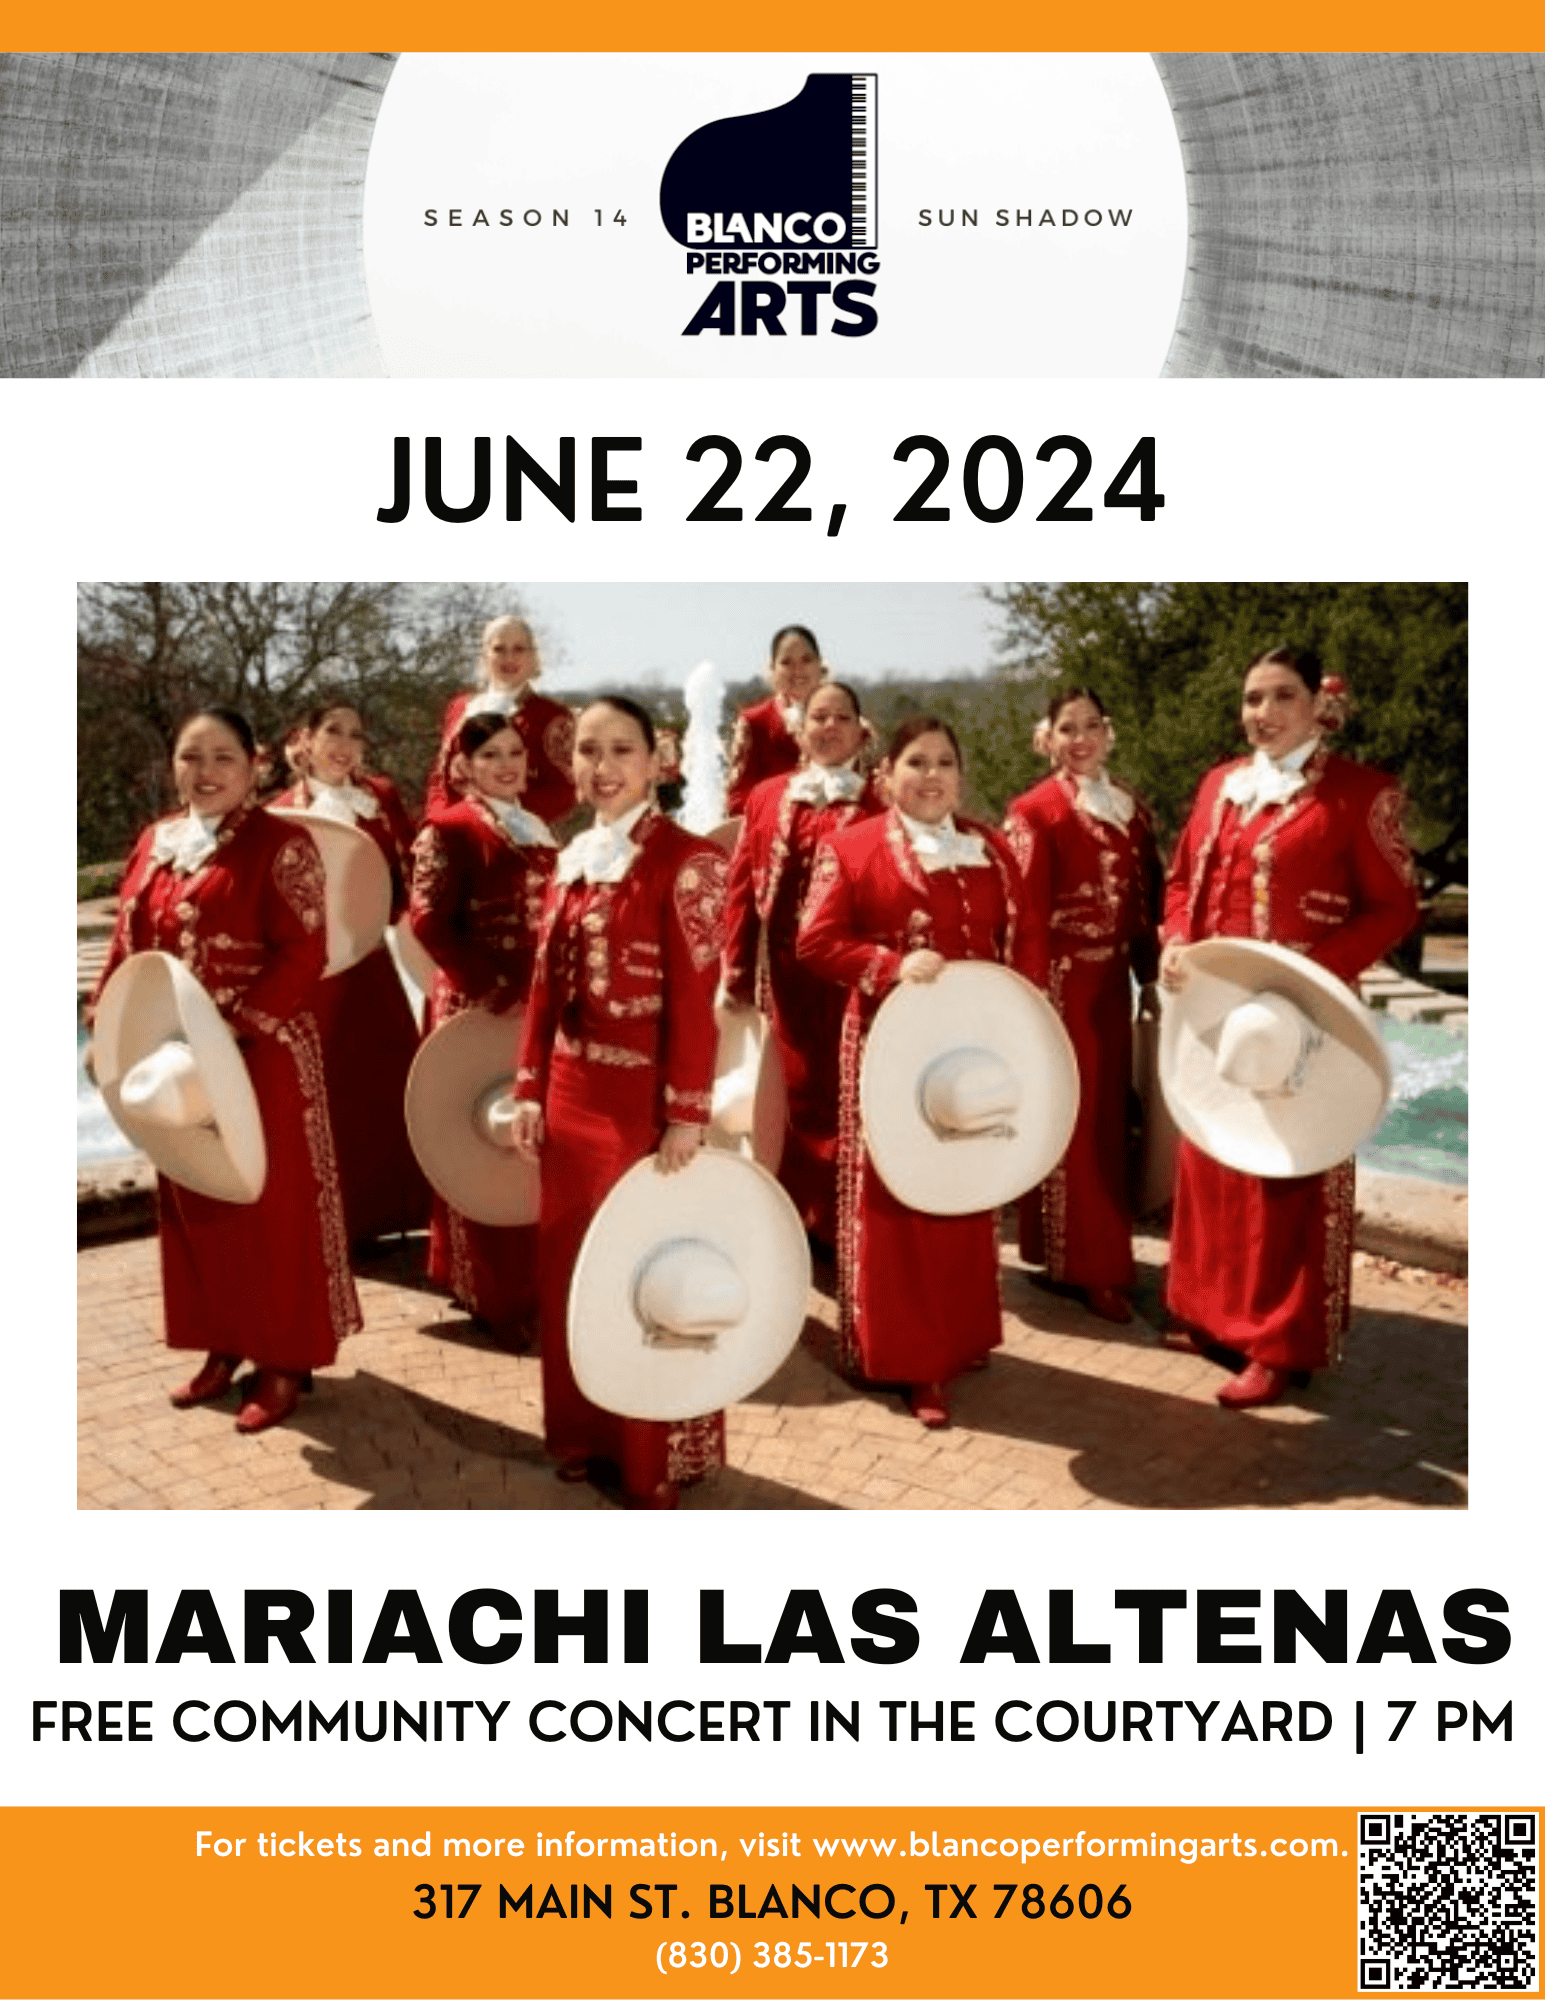 Blanco Performing Arts welcomes Mariachi Las Altenas